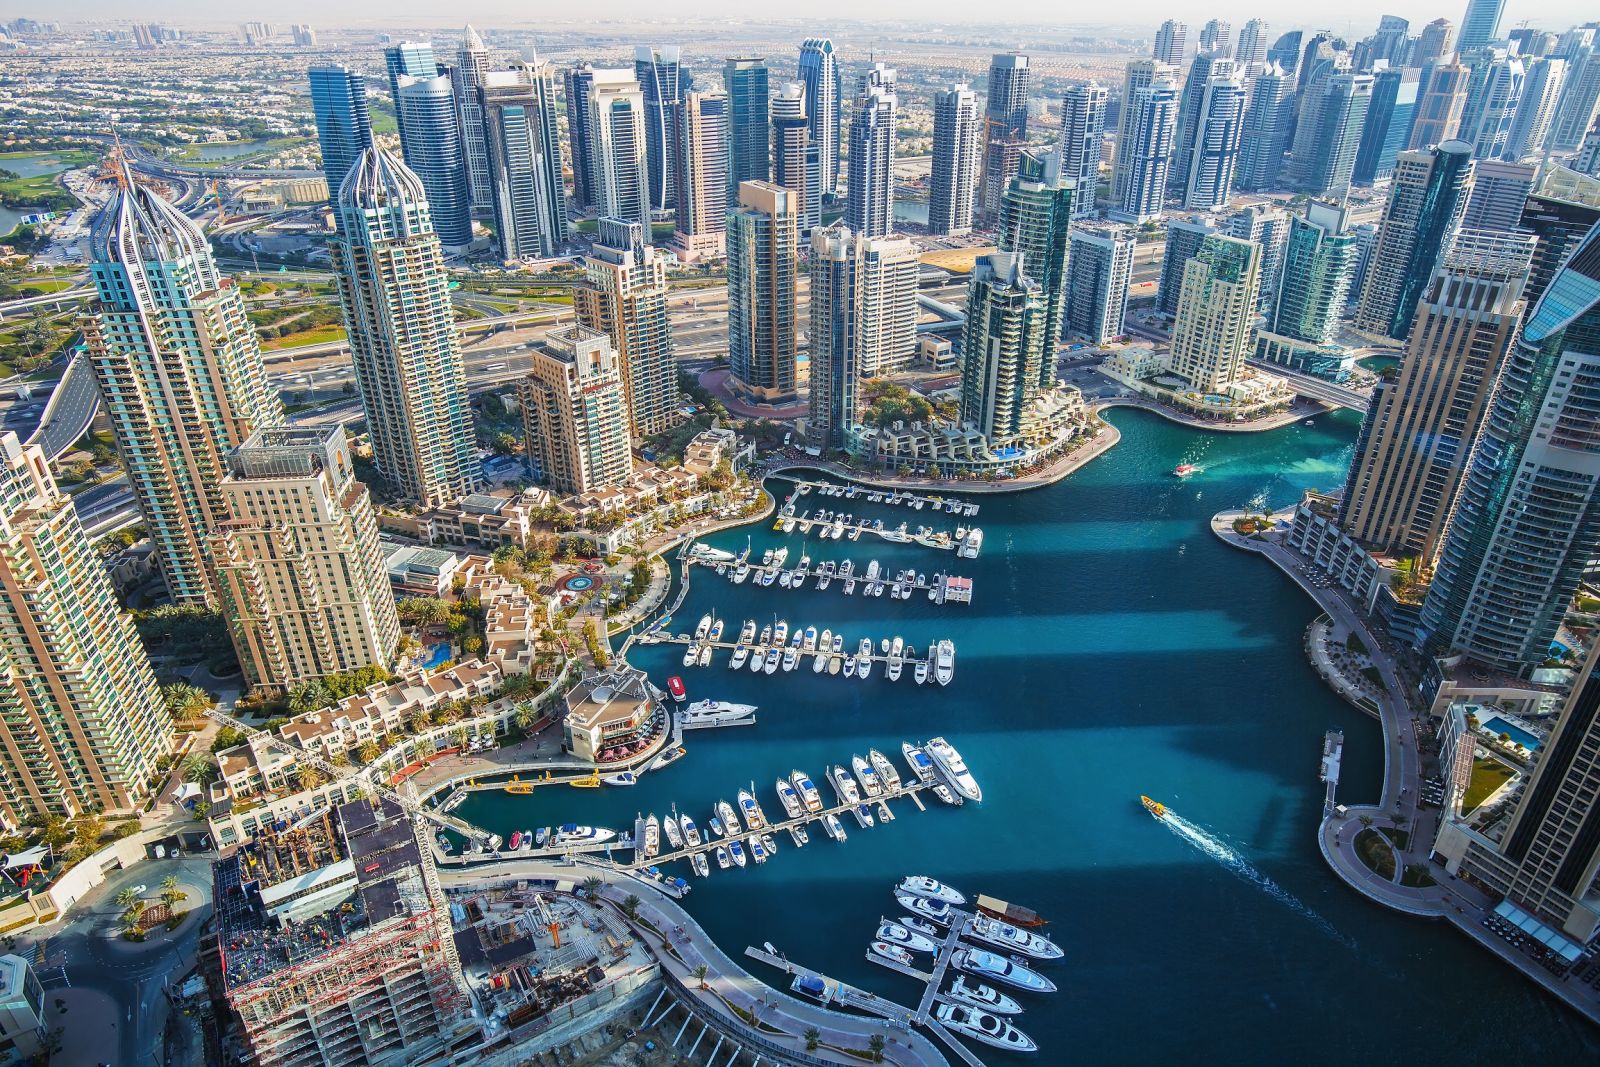 Dubai Marina đẹp lung linh với hình ảnh các tòa tháp chọc trời, tổ hợp mua sắm quy mô, các nhà hàng, quán bar luôn sôi động... cùng những cơ ngơi sang trọng hay bến đậu du thuyền hoành tráng. 